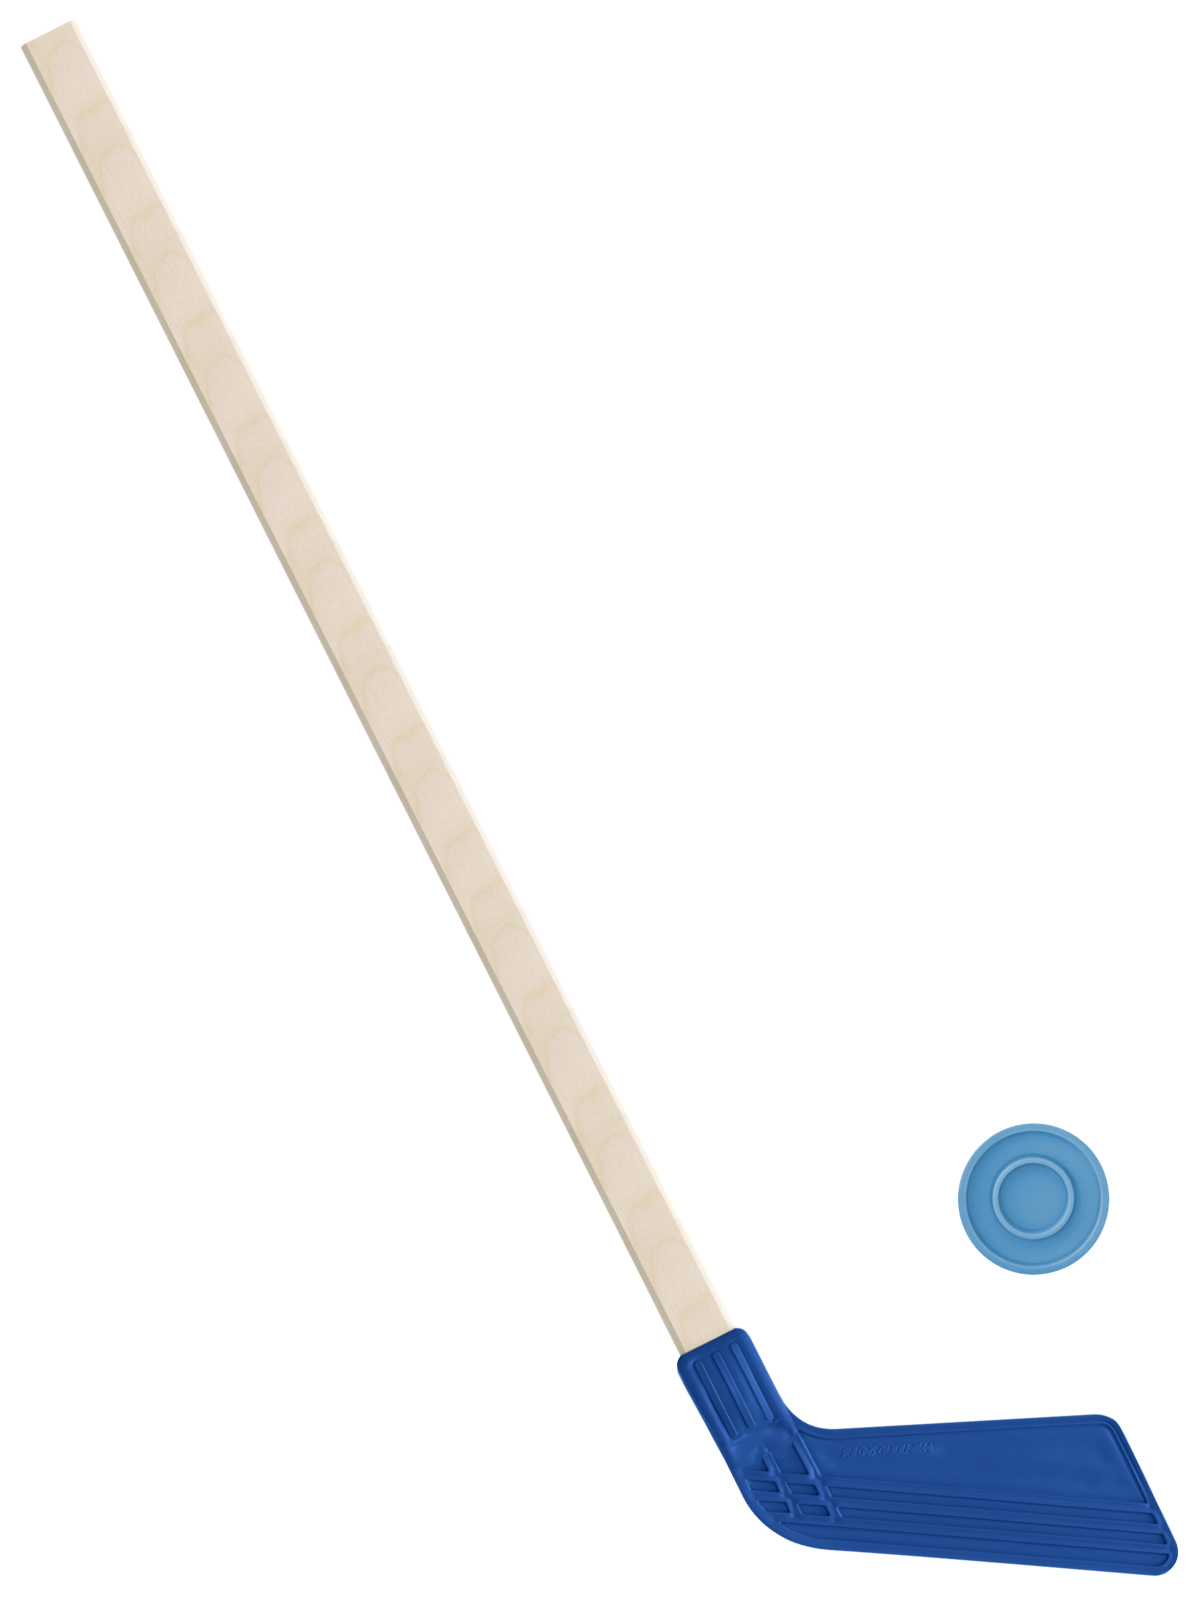 Детский хоккейный набор Задира-плюс, клюшка хоккейная 80 см (синяя)+шайба клюшка флорбольная acito medi 35 yellow 85 round прямой